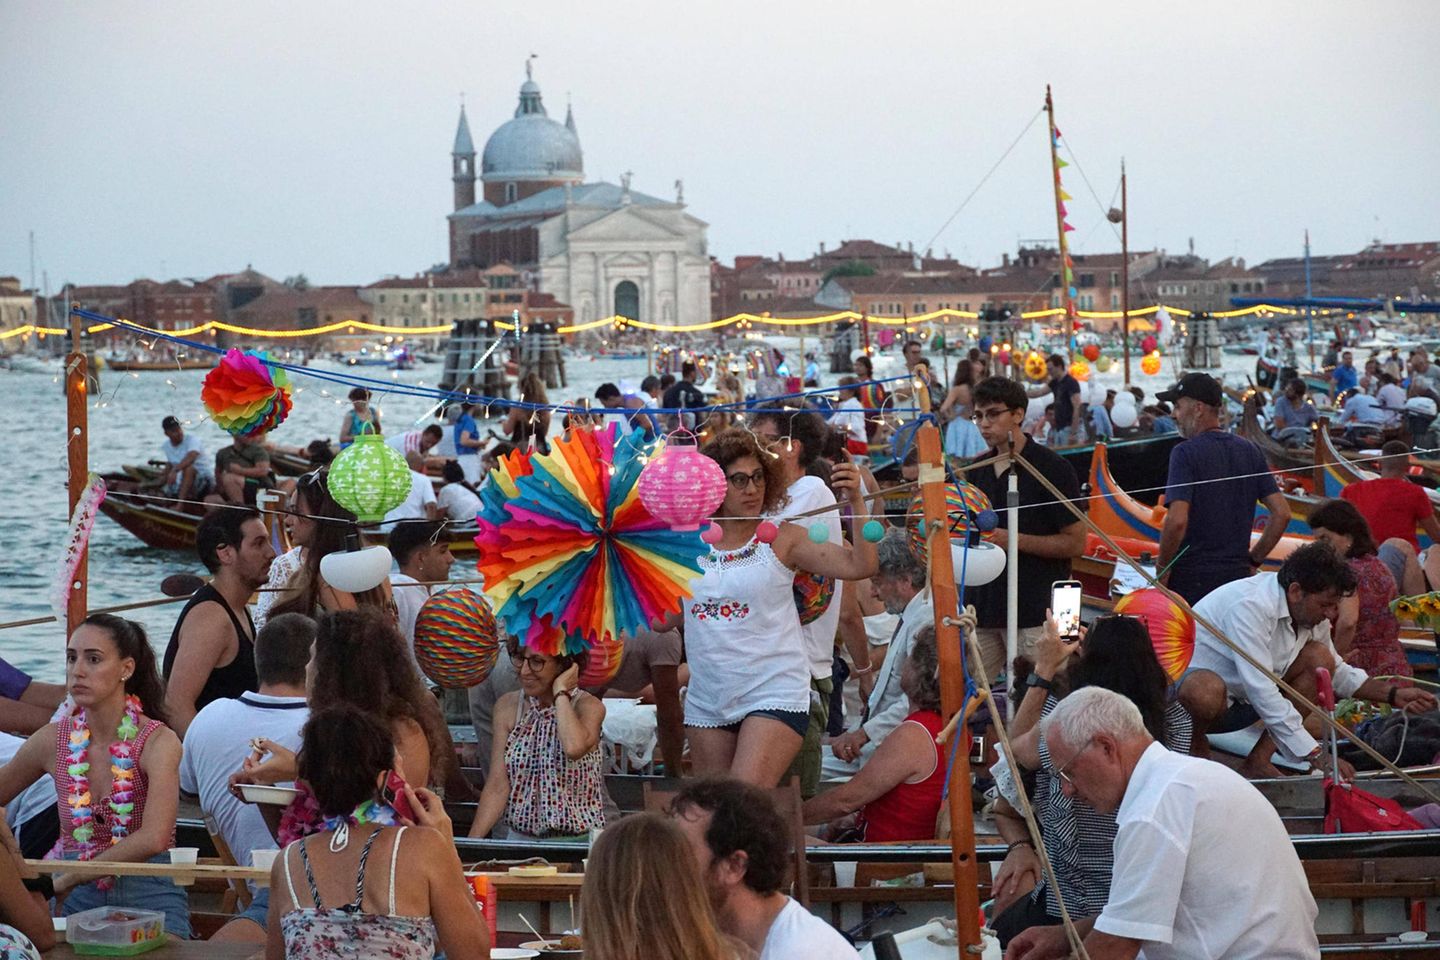 Städte wie Venedig können sich gegen den Zustrom von Touristen kaum noch wehren. Selbst Anti-Tourismus-Kampagnen laufen ins Leere